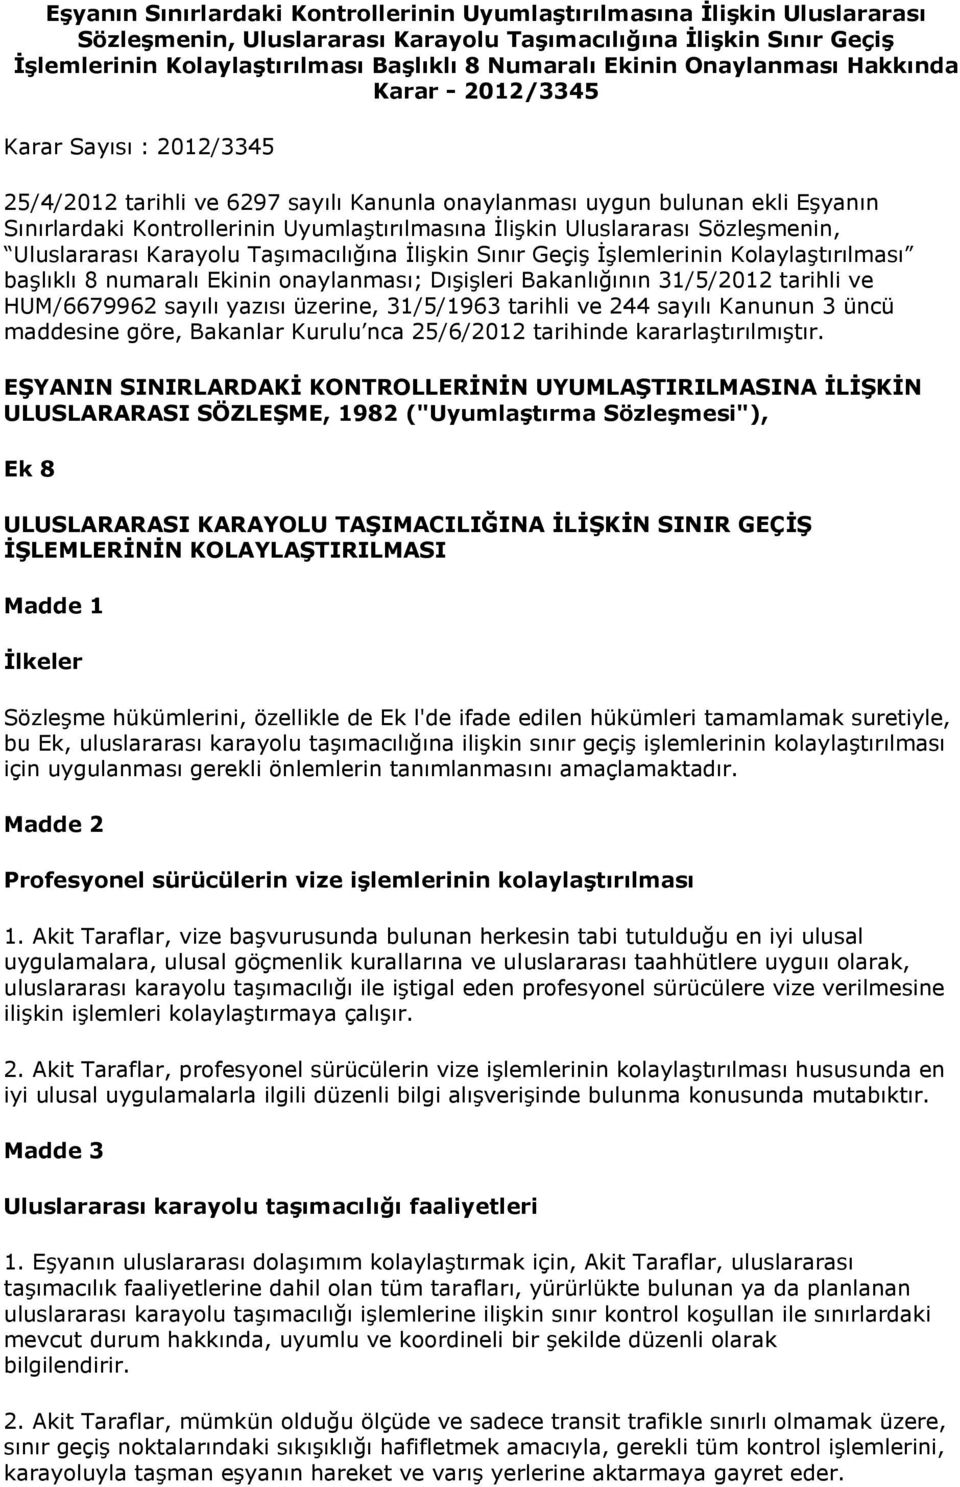 İlişkin Uluslararası Sözleşmenin, Uluslararası Karayolu Taşımacılığına İlişkin Sınır Geçiş İşlemlerinin Kolaylaştırılması başlıklı 8 numaralı Ekinin onaylanması; Dışişleri Bakanlığının 31/5/2012